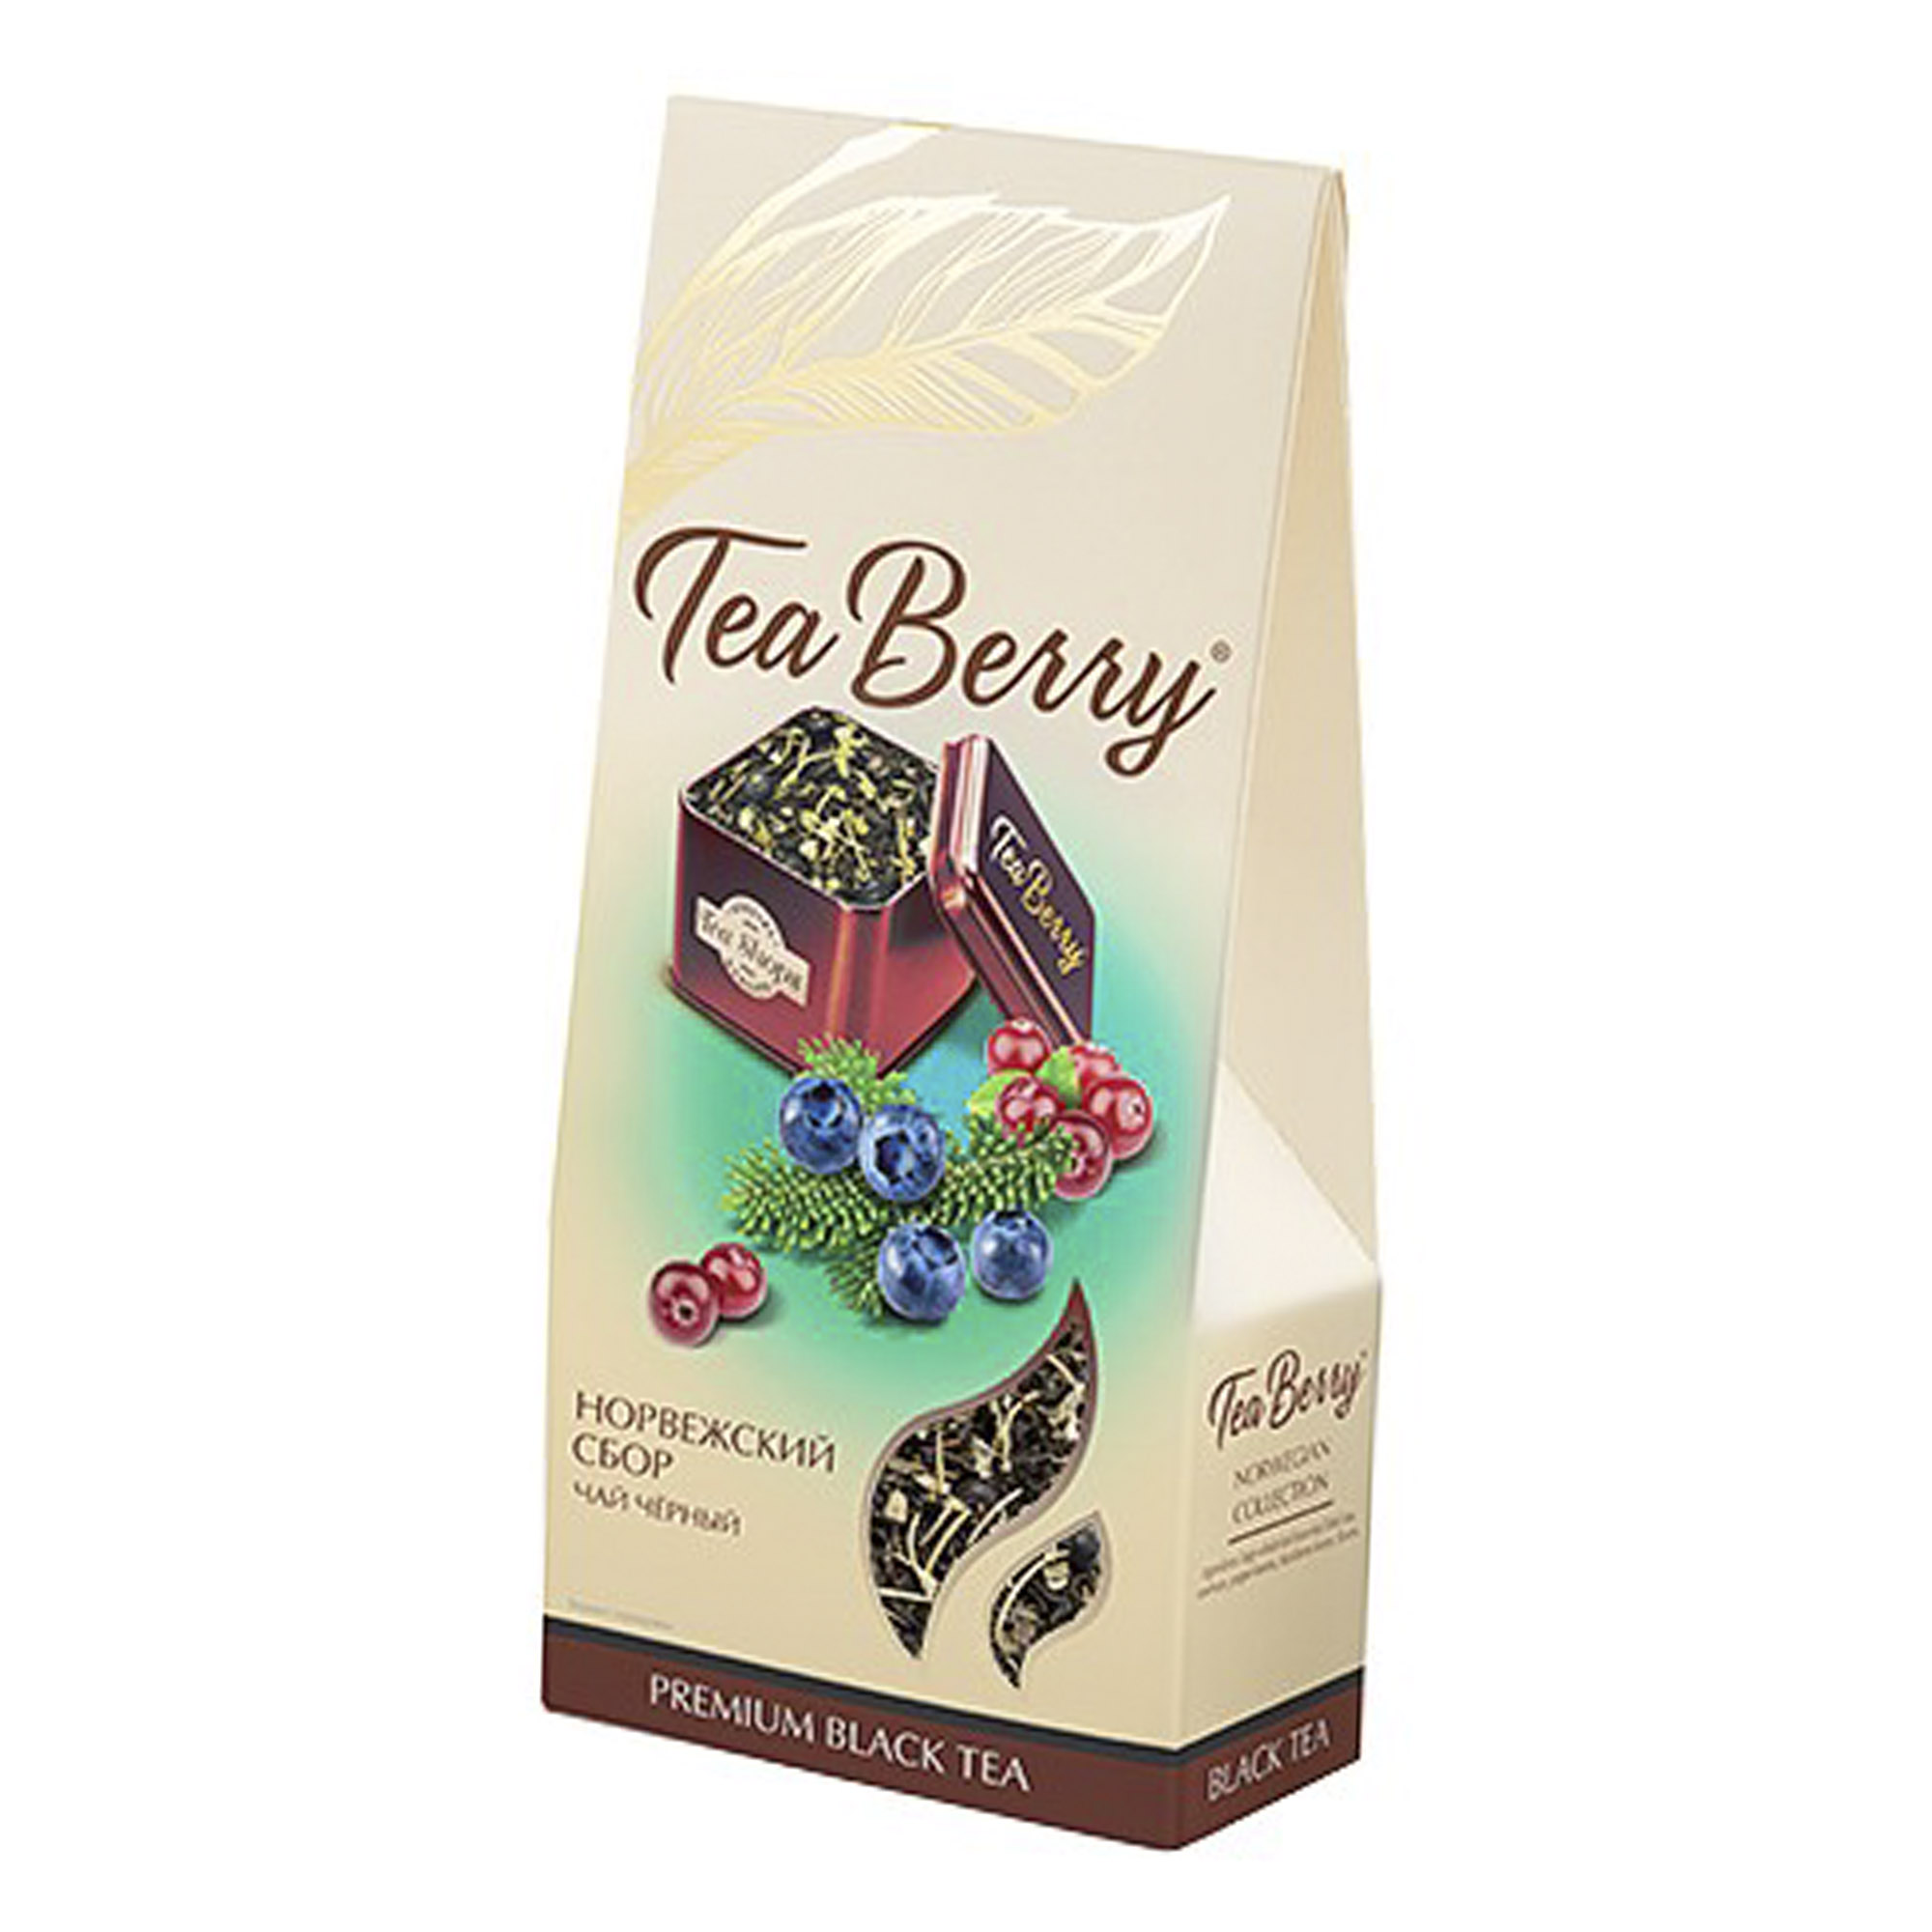 чай черный teaberry сочная клубника со вкусом маракуйи 100 г Чай черный TeaBerry Норвежский сбор 100 г